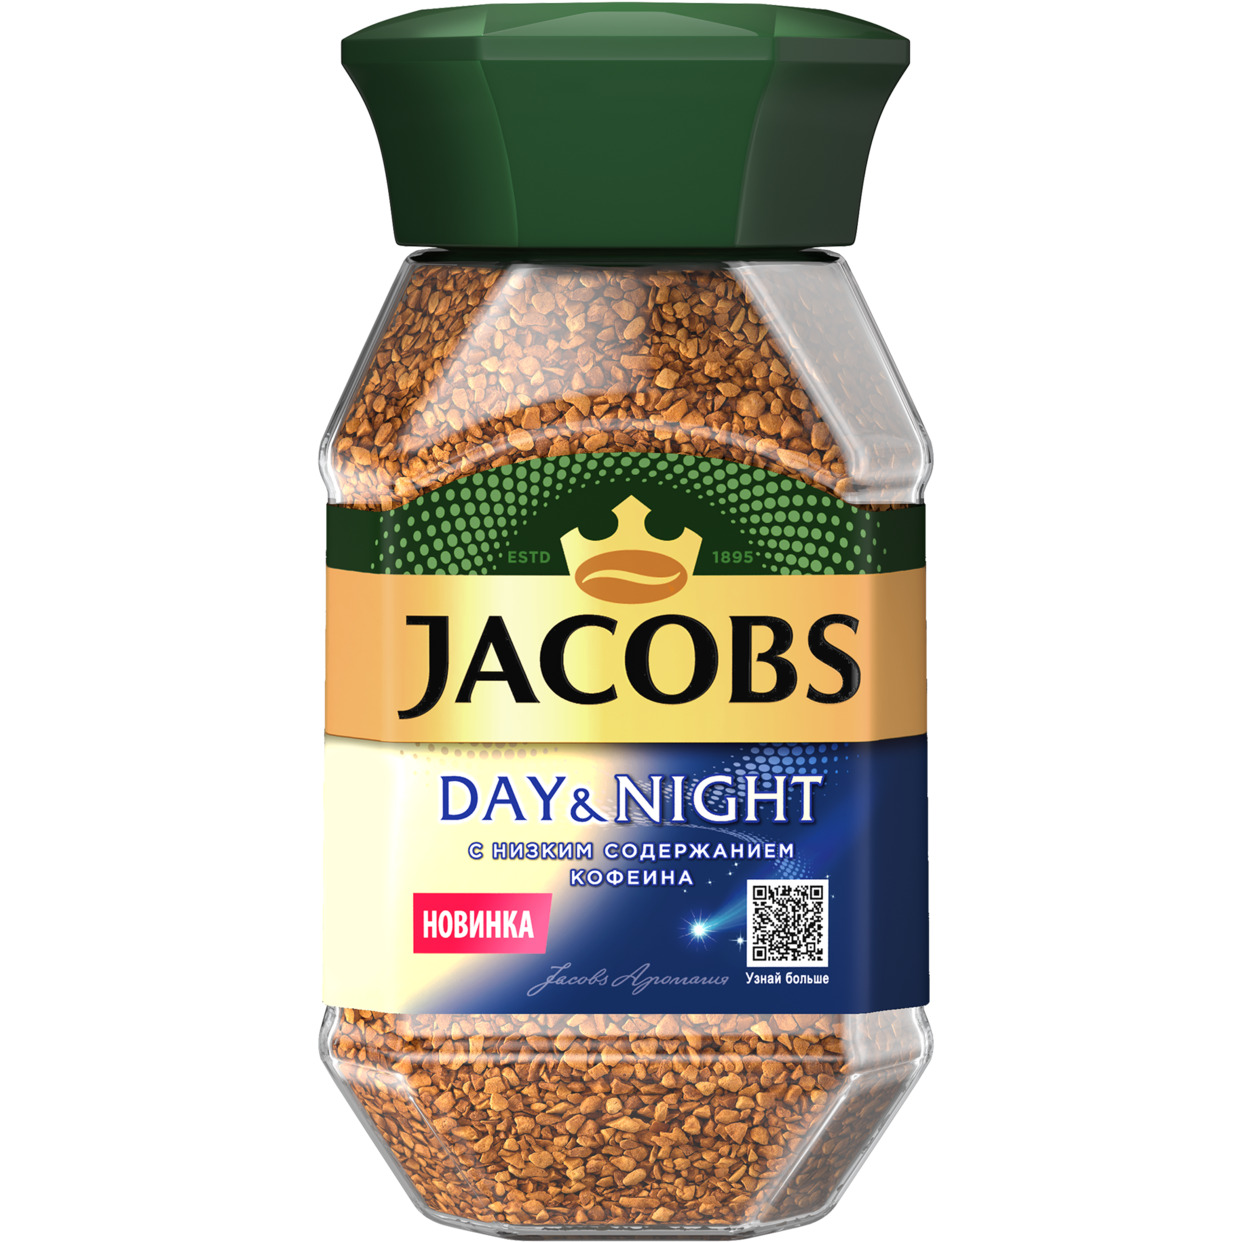 Кофе натуральный растворимый сублимированный декофеинизированный JACOBS Day&Night (День и Ночь) 95г по акции в Пятерочке